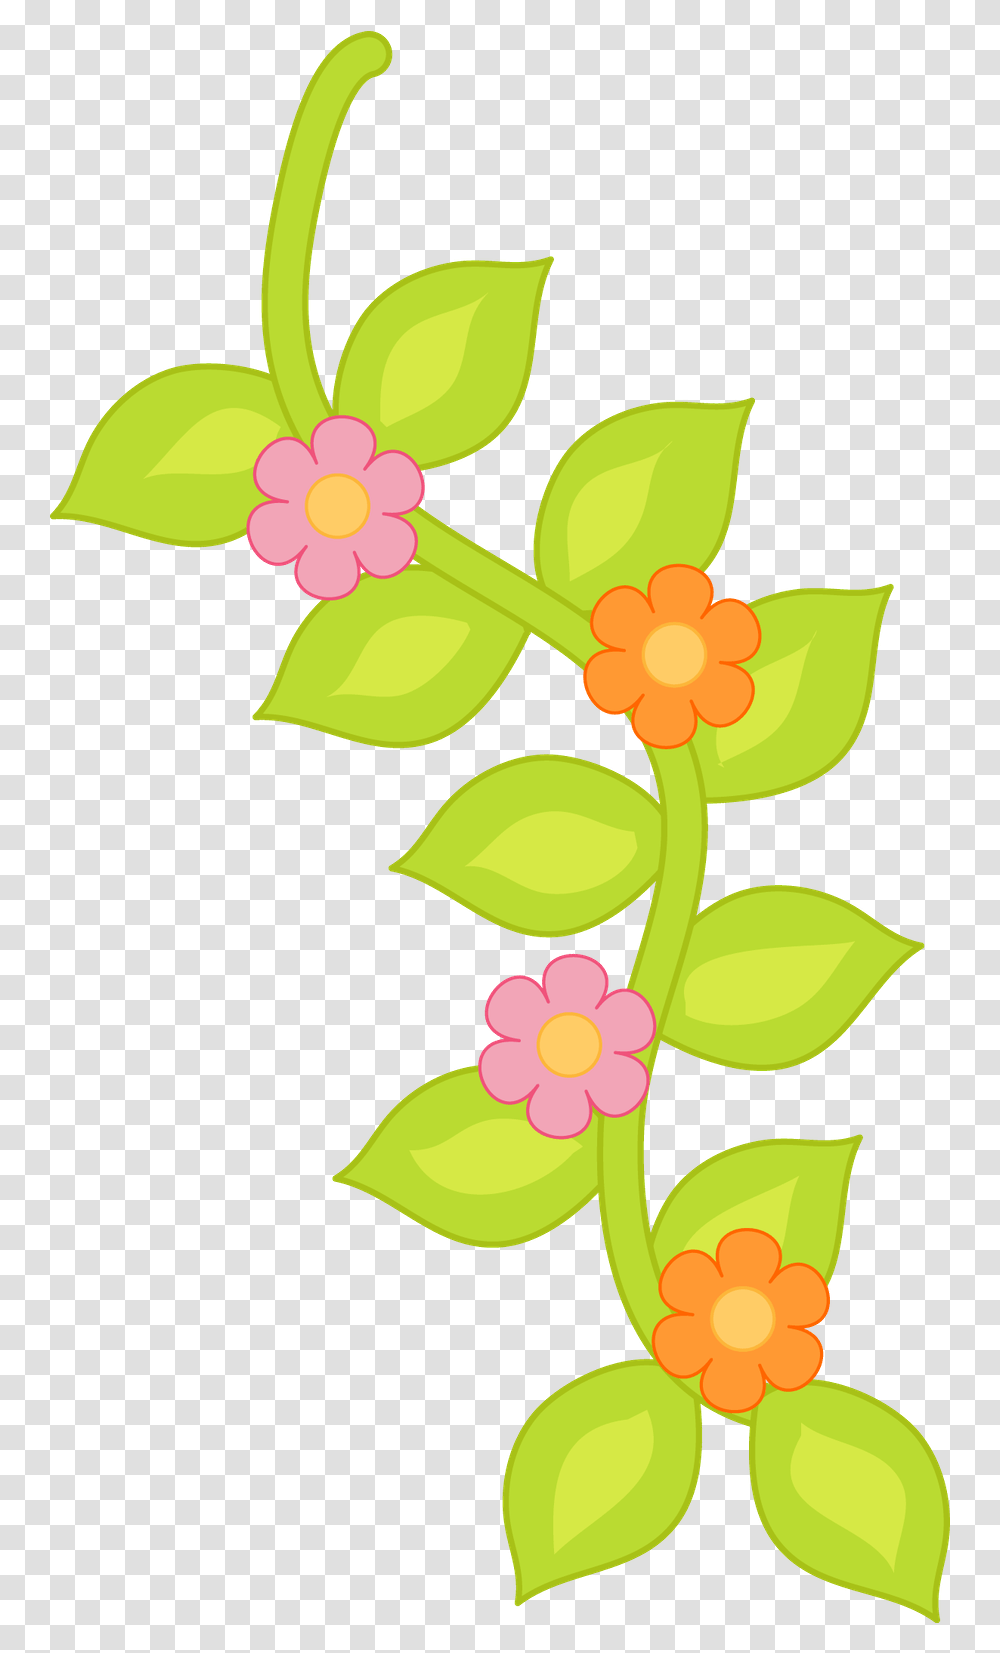 Cute Illustration Felt Flowers Planner Stickers Flores Flores Decoraciones Para Paginas, Graphics, Art, Floral Design, Pattern Transparent Png